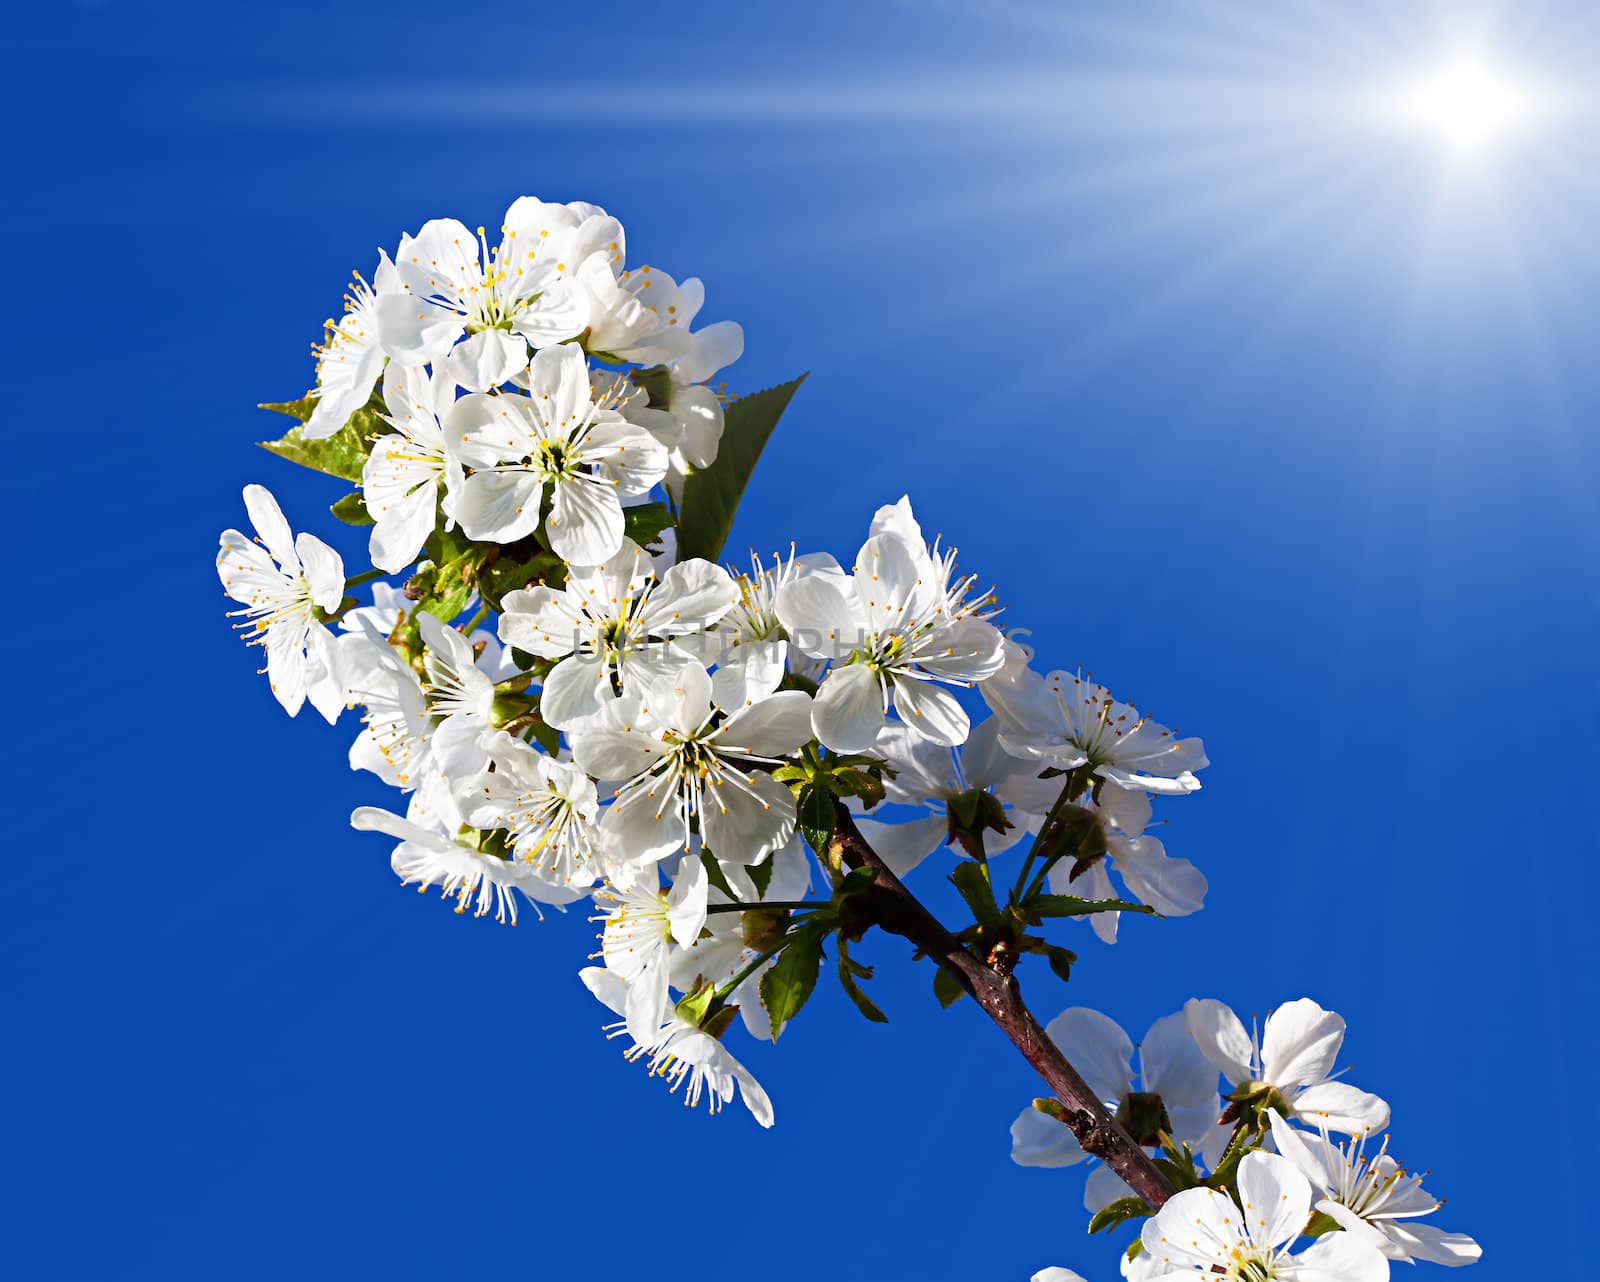 Spring flowers tree in sun light by palinchak